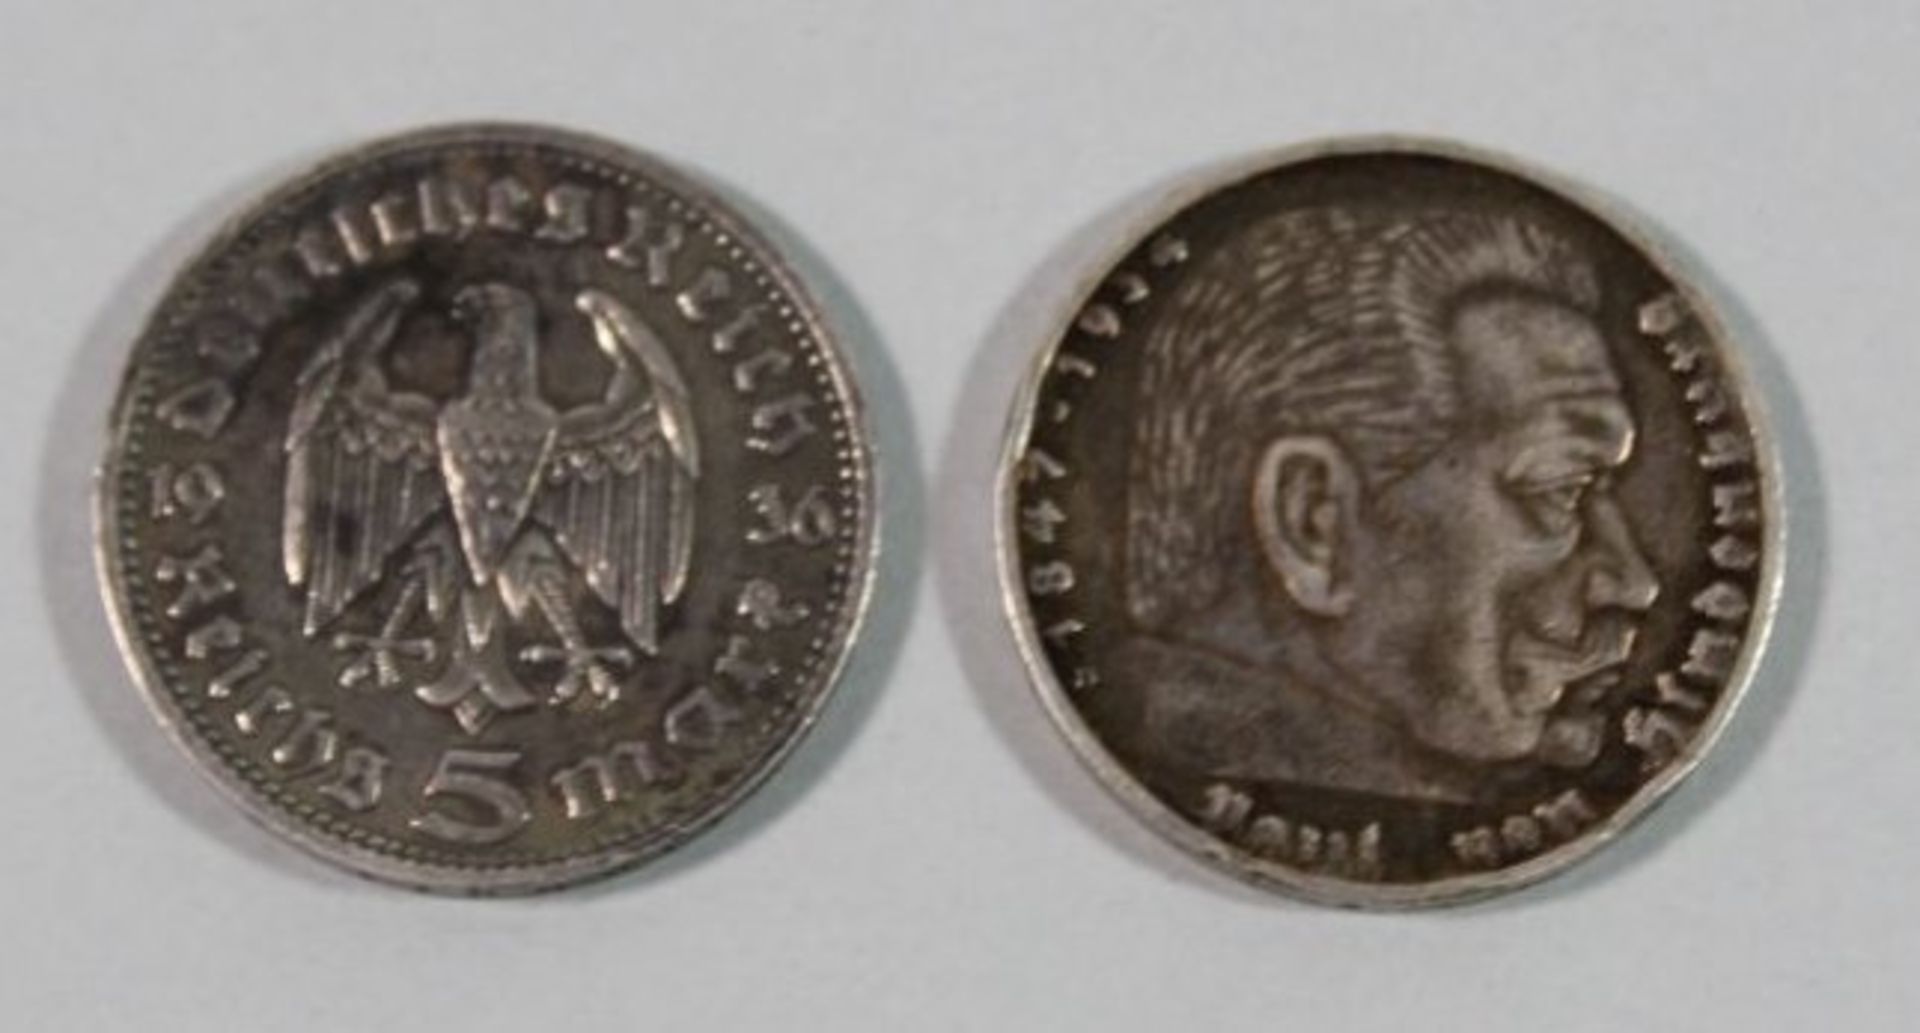 2x 5 Reichsmark, Hindenburg, 1936, zus. 27,6gr. - Bild 2 aus 2